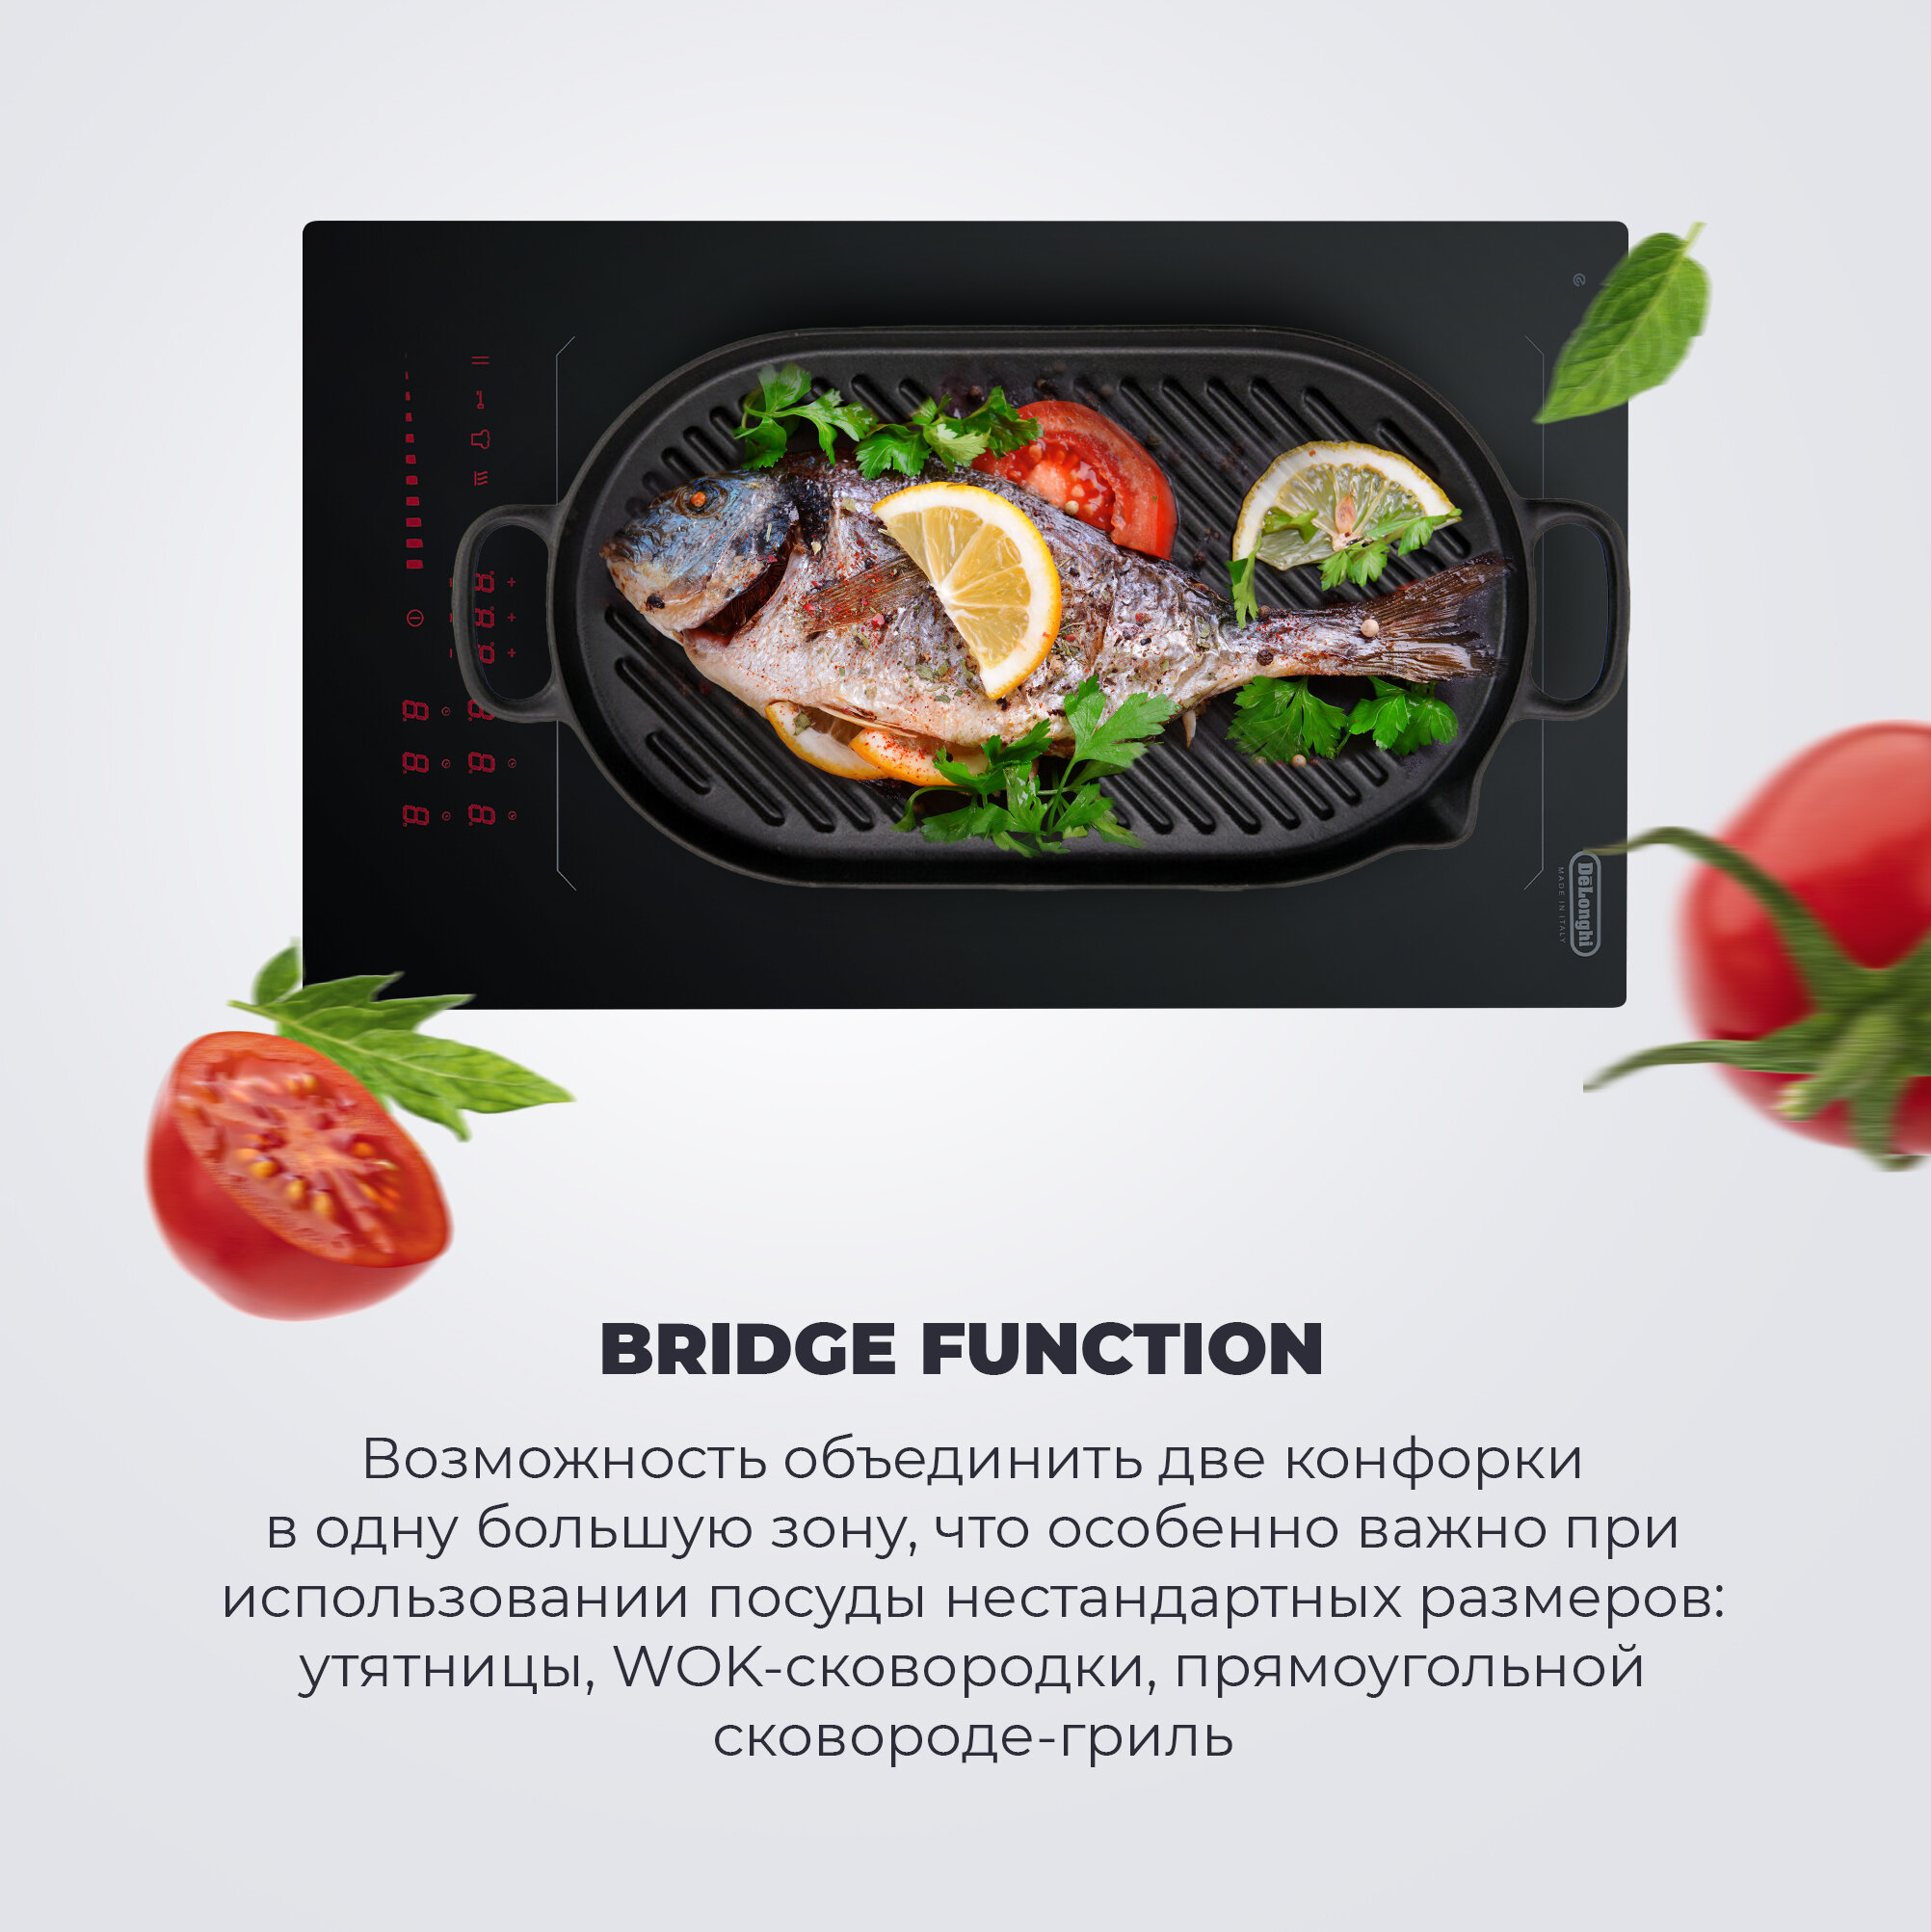 Индукционная варочная панель DeLonghi SLI 302 RUS, 30 см, черная, индикатор остаточного тепла, Bridge function, сенсорное управление - фото №5